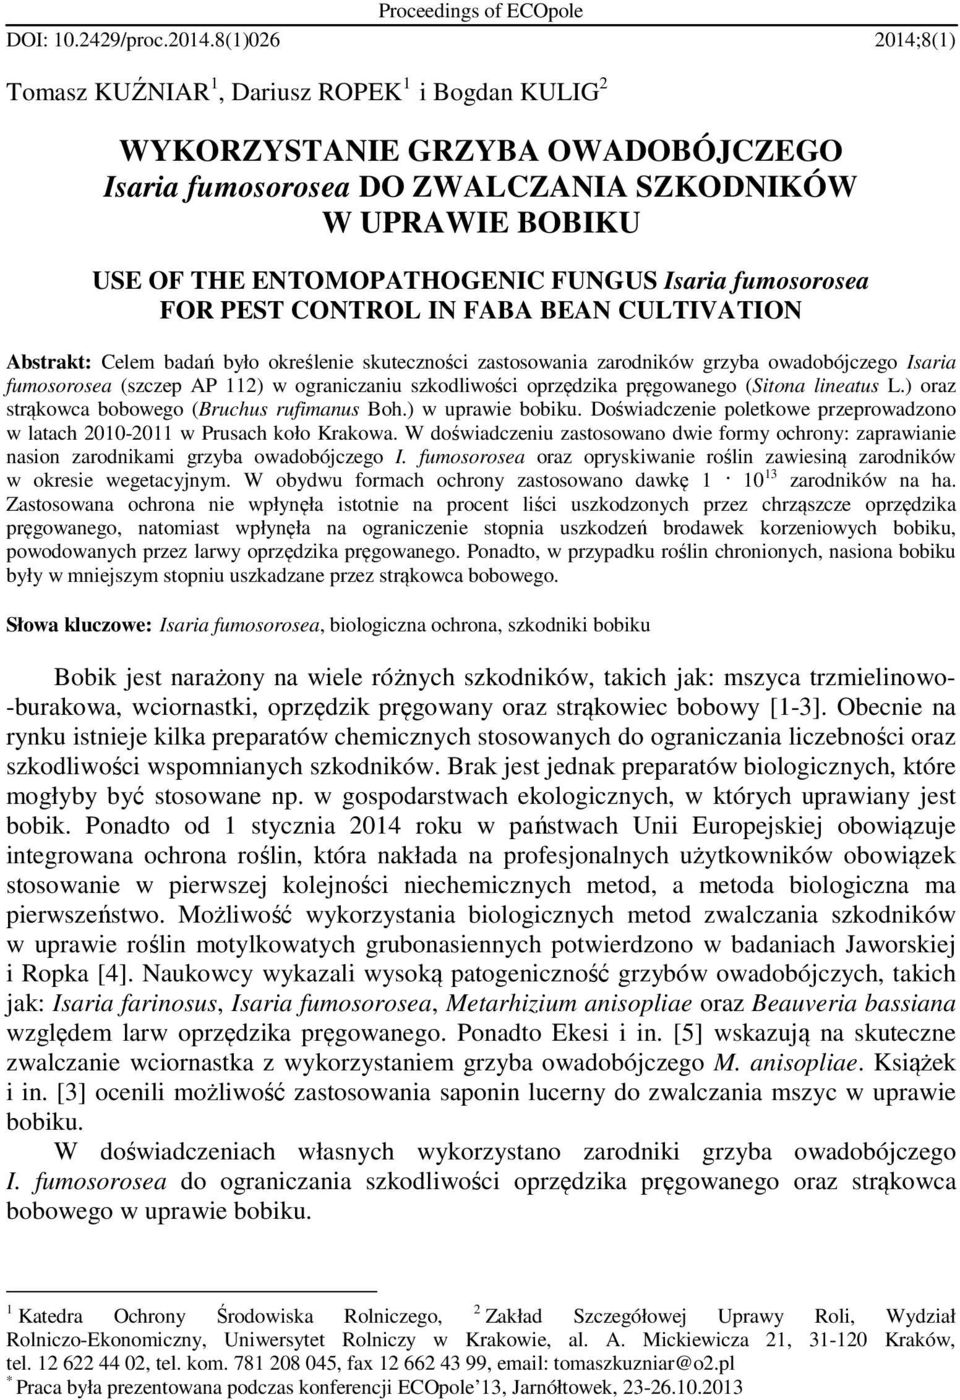 Isaria fumosorosea FOR PEST CONTROL IN FABA BEAN CULTIVATION Abstrakt: Celem badań było określenie skuteczności zastosowania zarodników grzyba owadobójczego Isaria fumosorosea (szczep AP 112) w